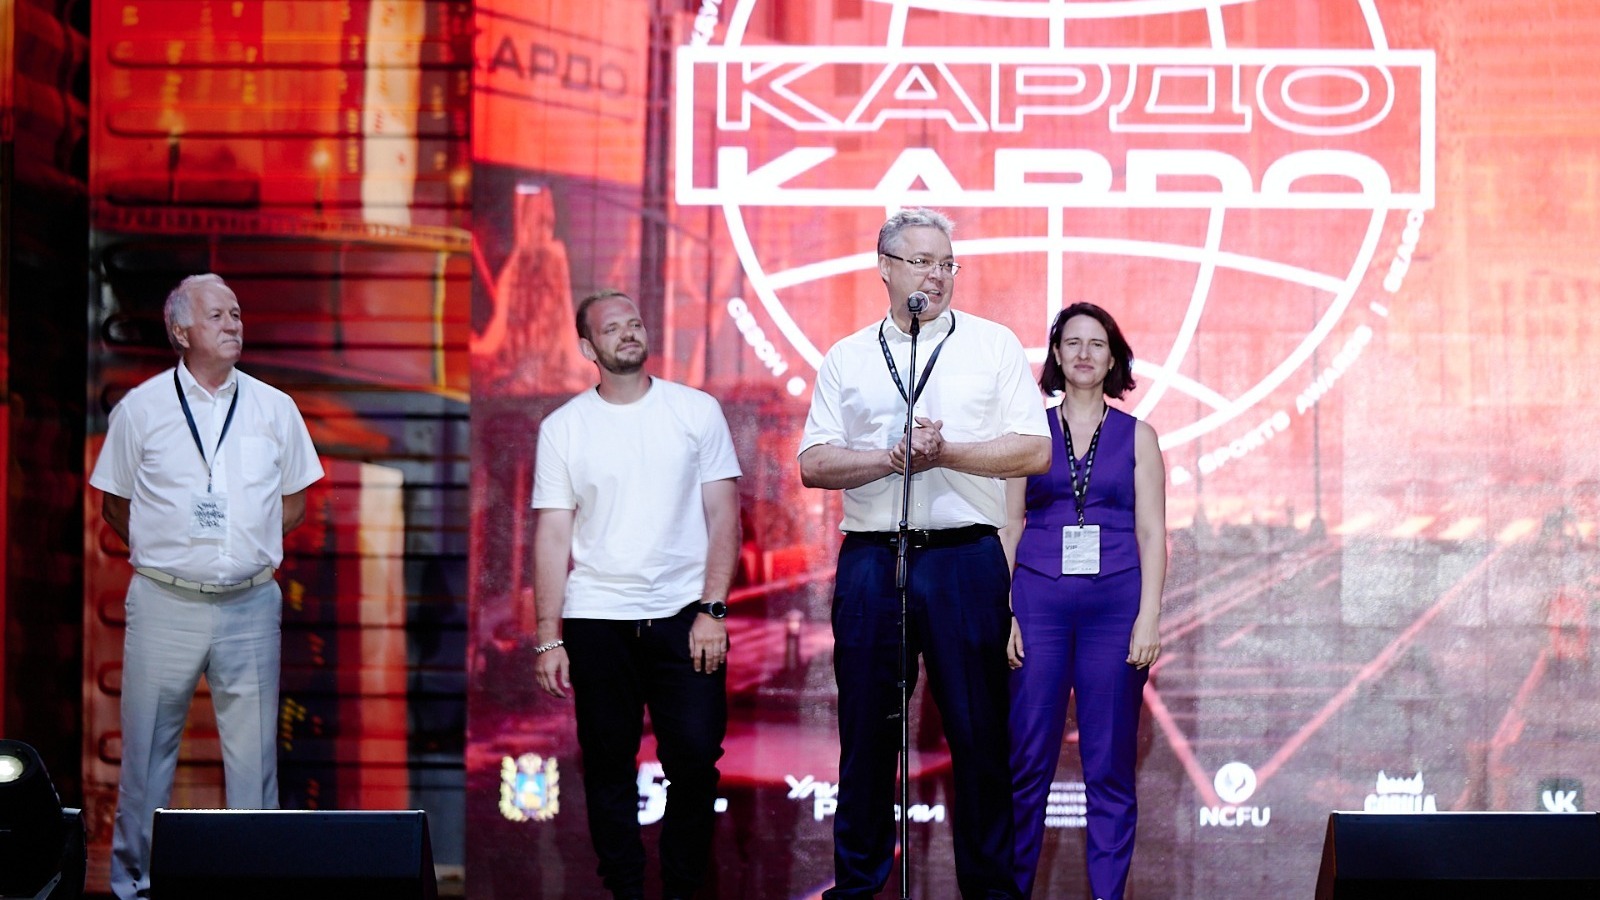 В Ставрополе принимают международный конкурс уличной культуры «Кардо»